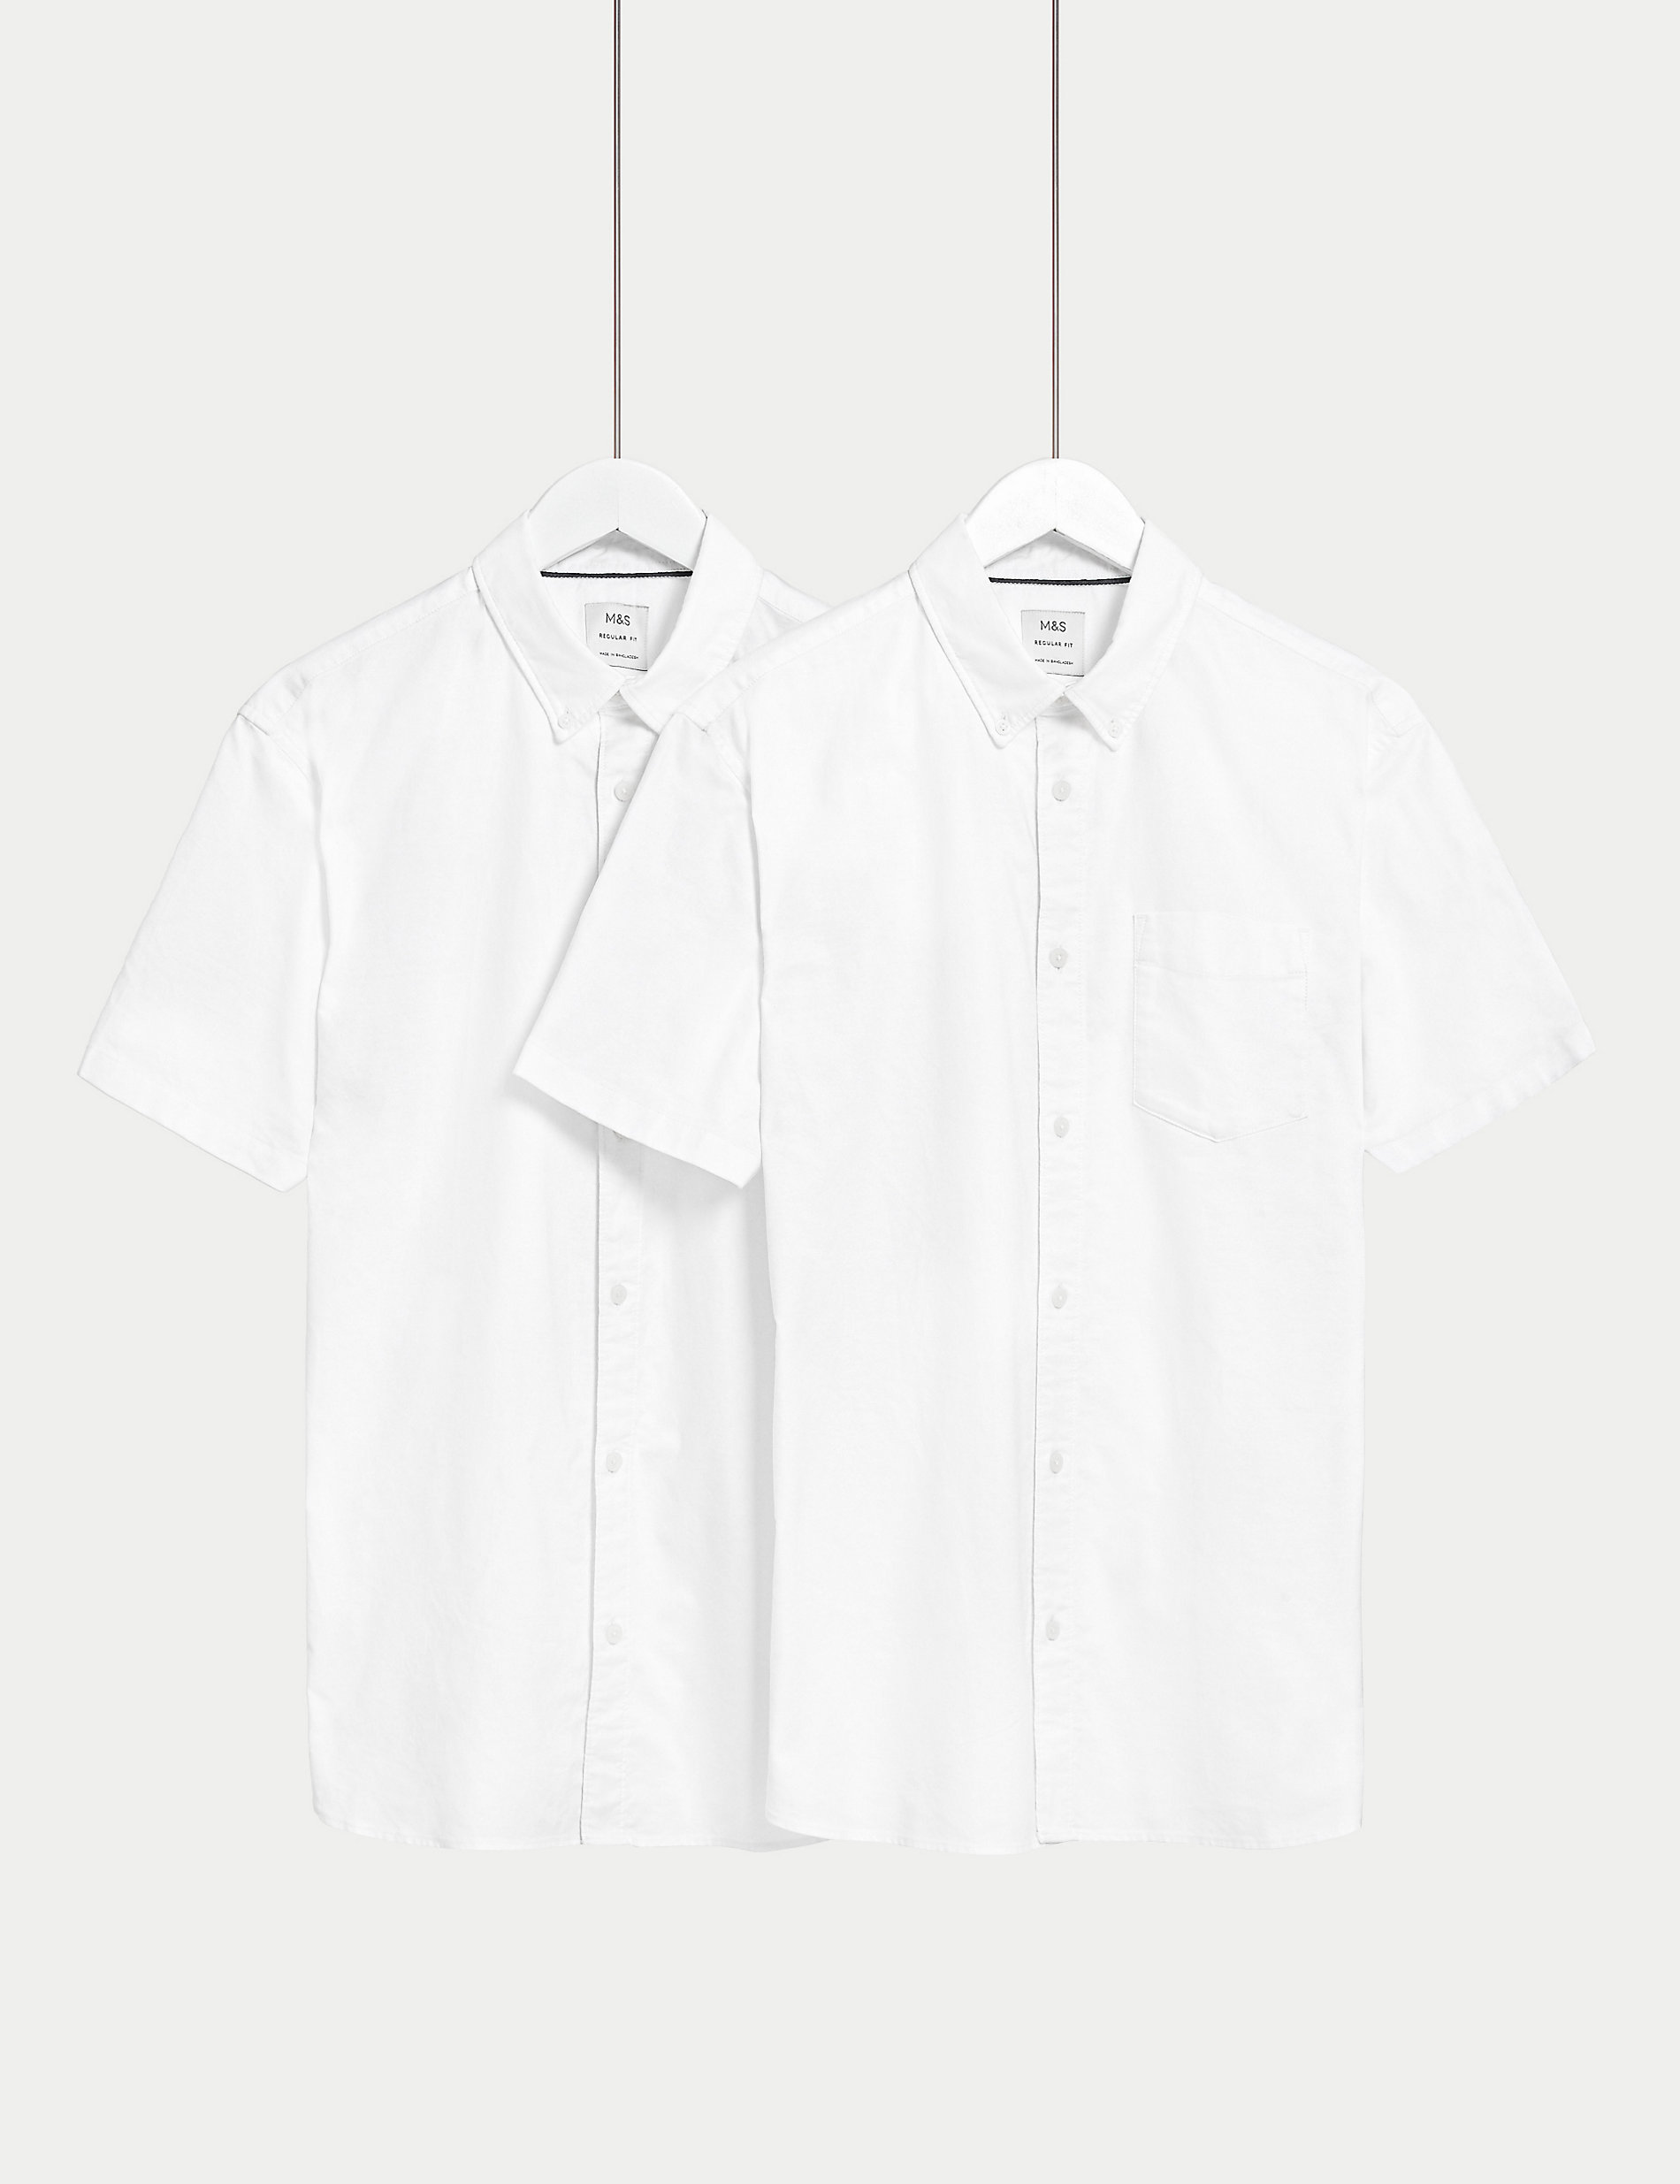 2 пары оксфордских рубашек из чистого хлопка Marks & Spencer, белый носки женские из чистого хлопка 4 пары